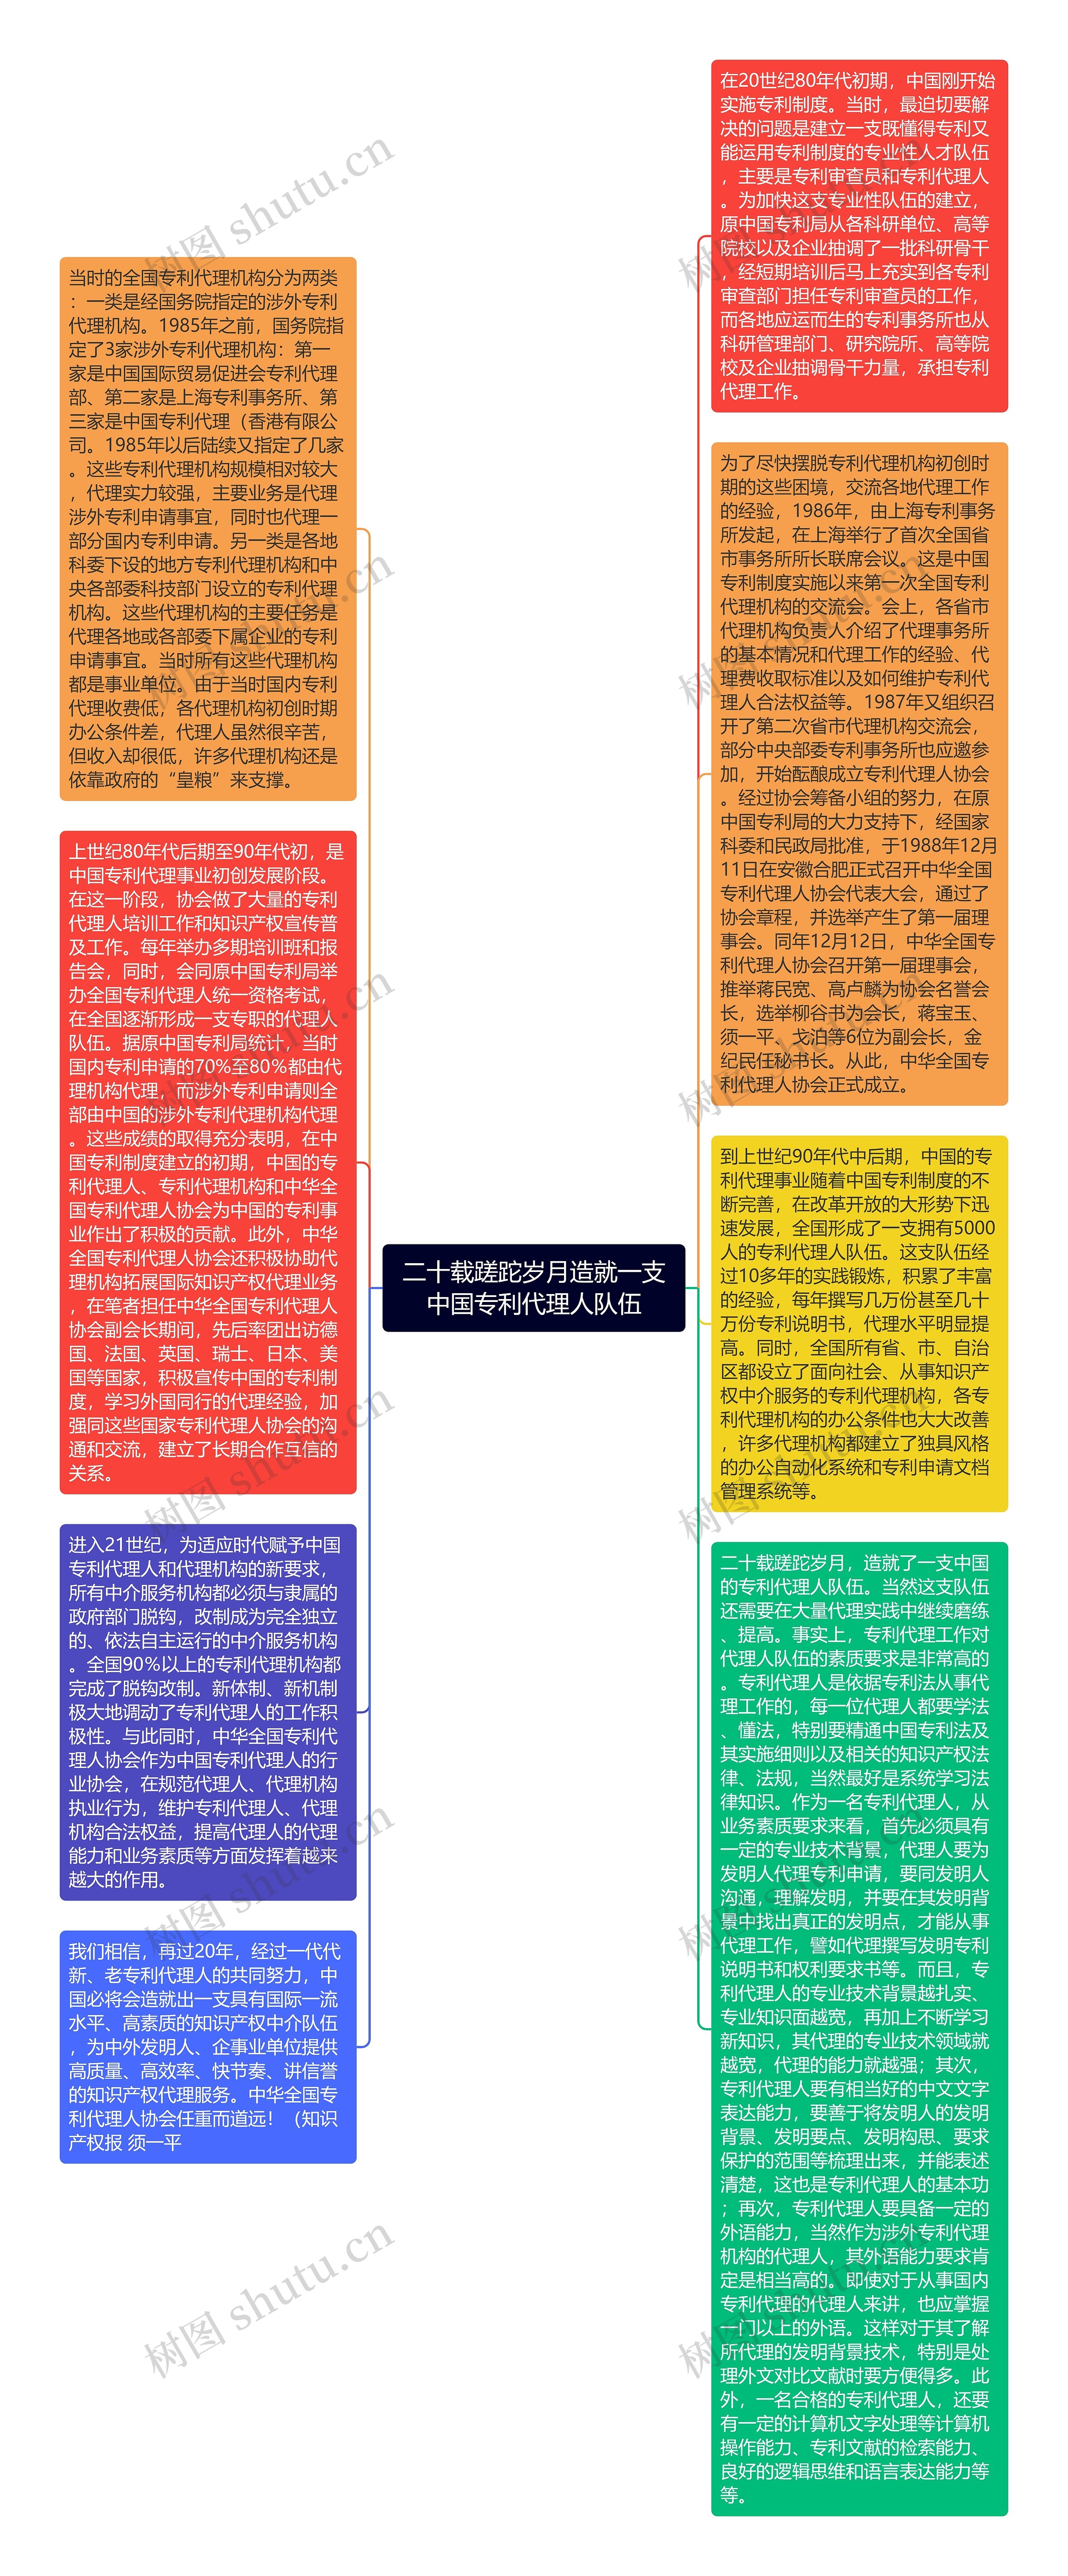 二十载蹉跎岁月造就一支中国专利代理人队伍